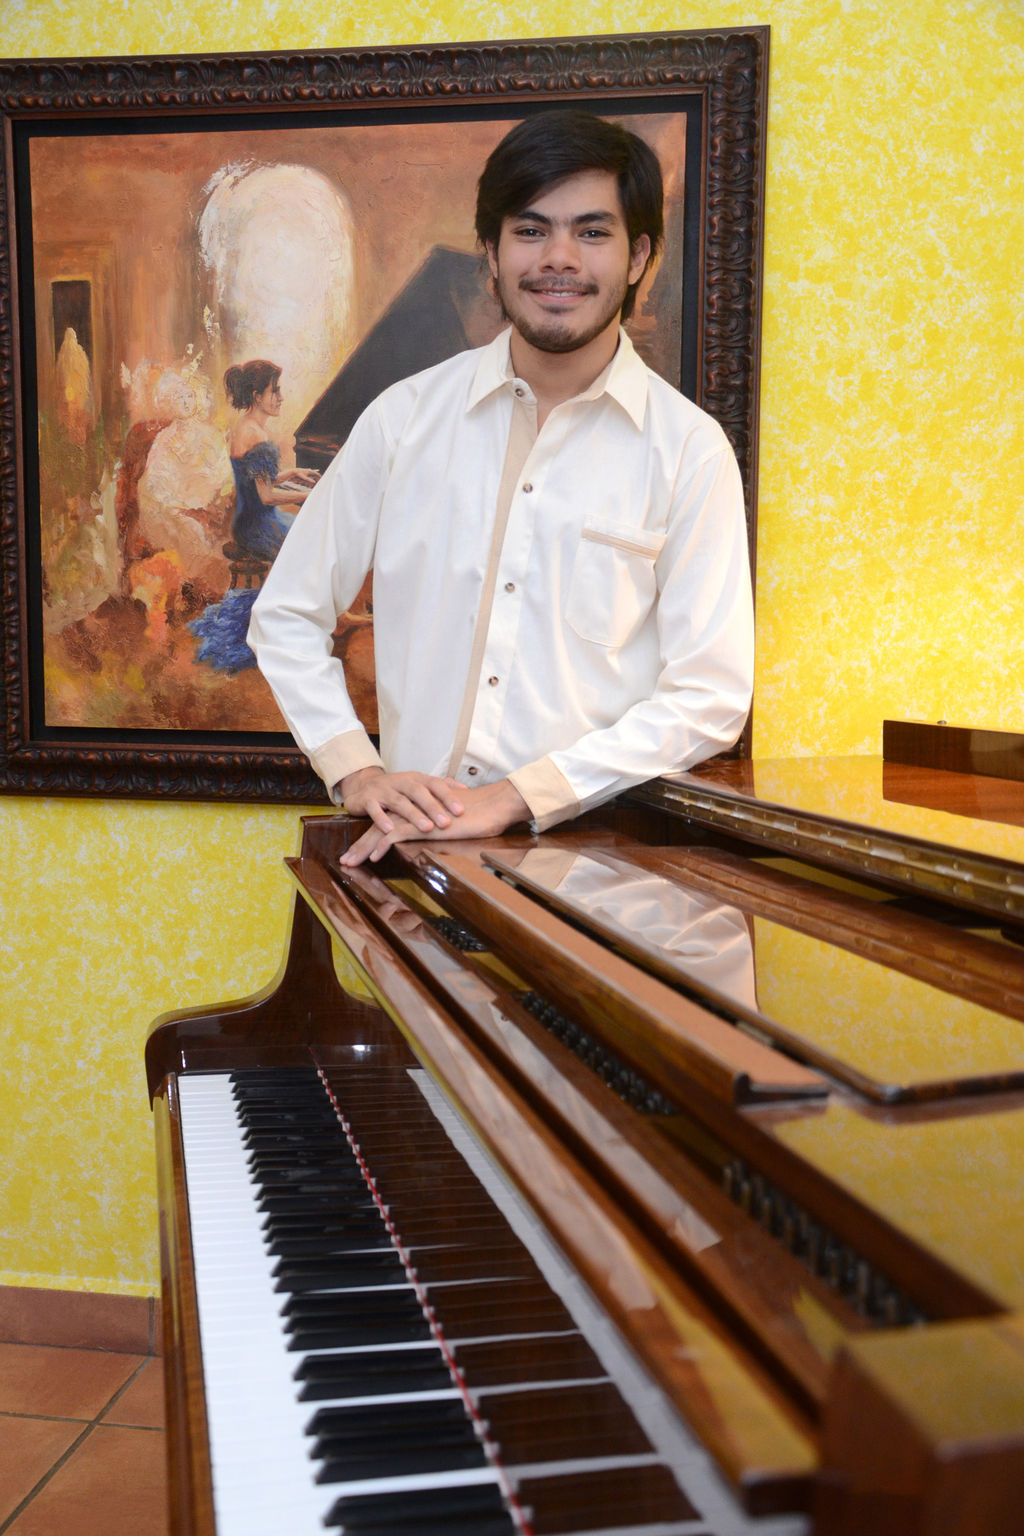 Vivir para tocar. El pianista lagunero Ricardo Acosta, quien se encuentra próximo a concluir sus estudios en Nueva York, empieza a ver cristalizados sus logros como concertista en México.